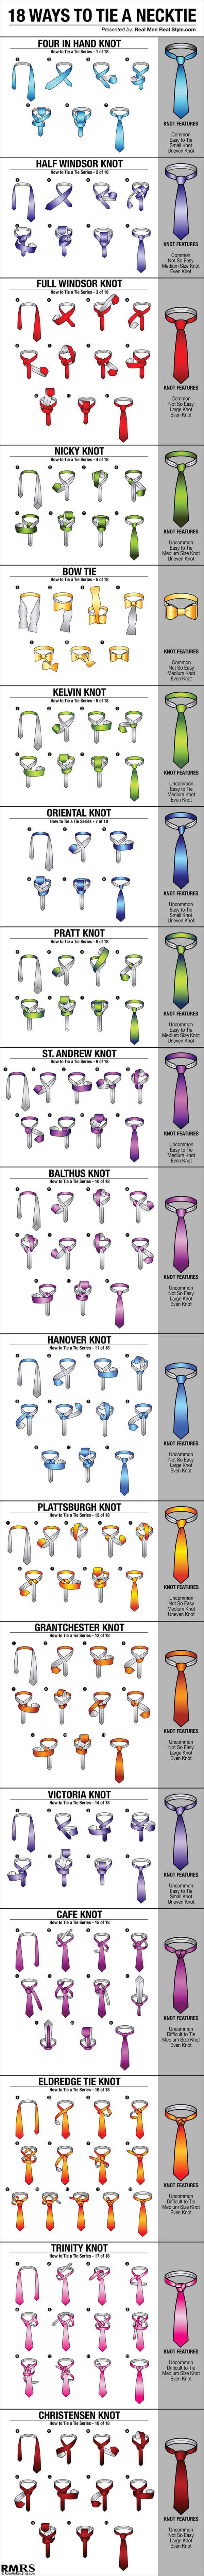 Eighteen Ways To Tie That Neck Tie